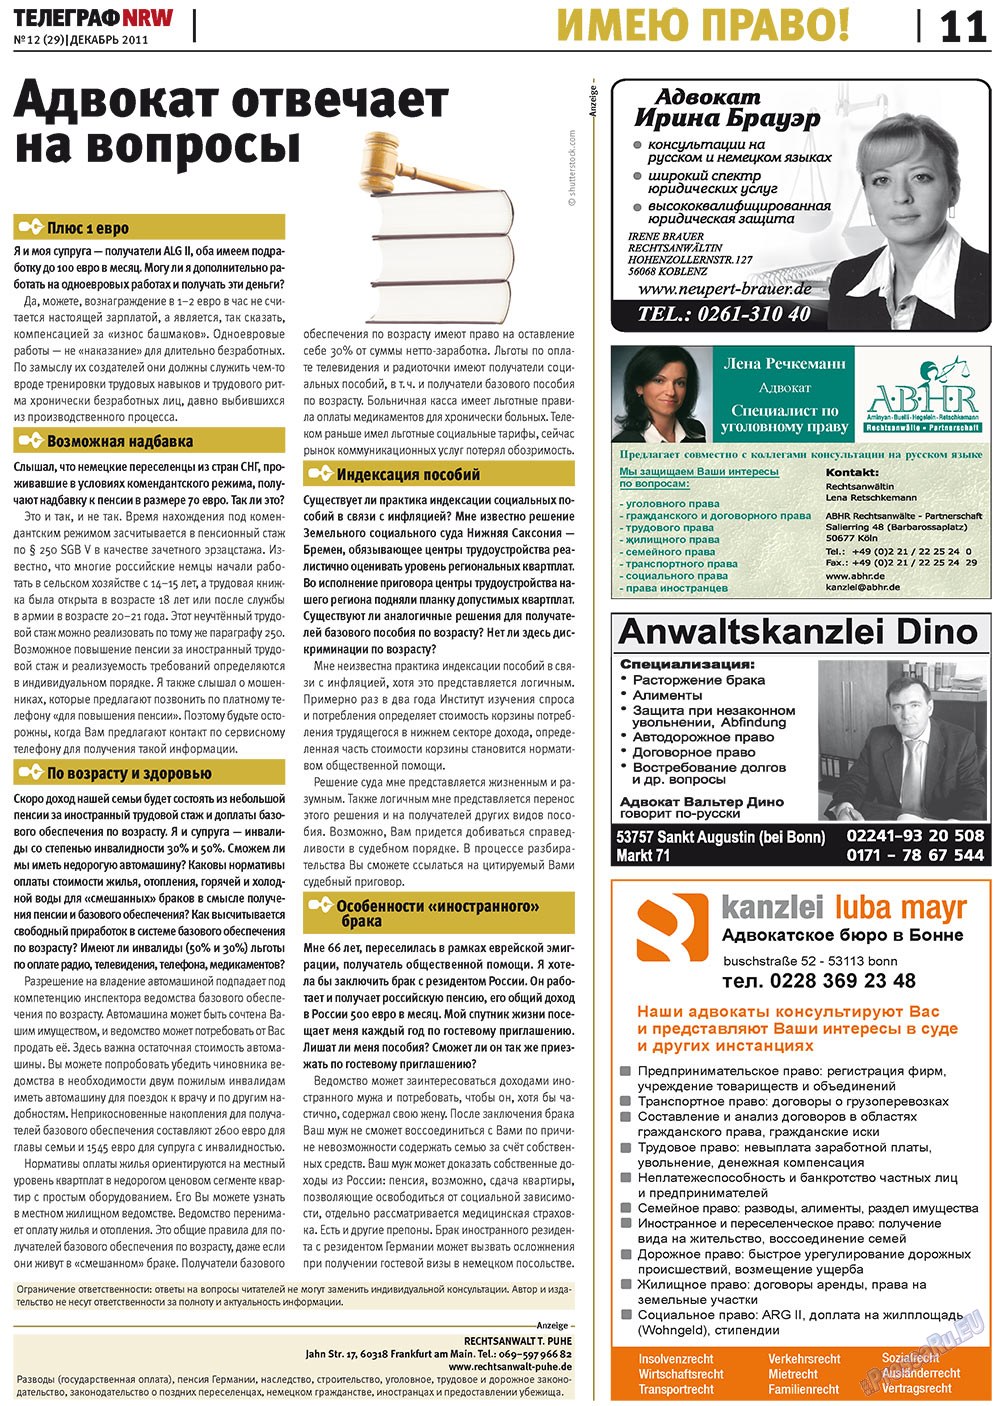 Телеграф NRW (газета). 2011 год, номер 12, стр. 11